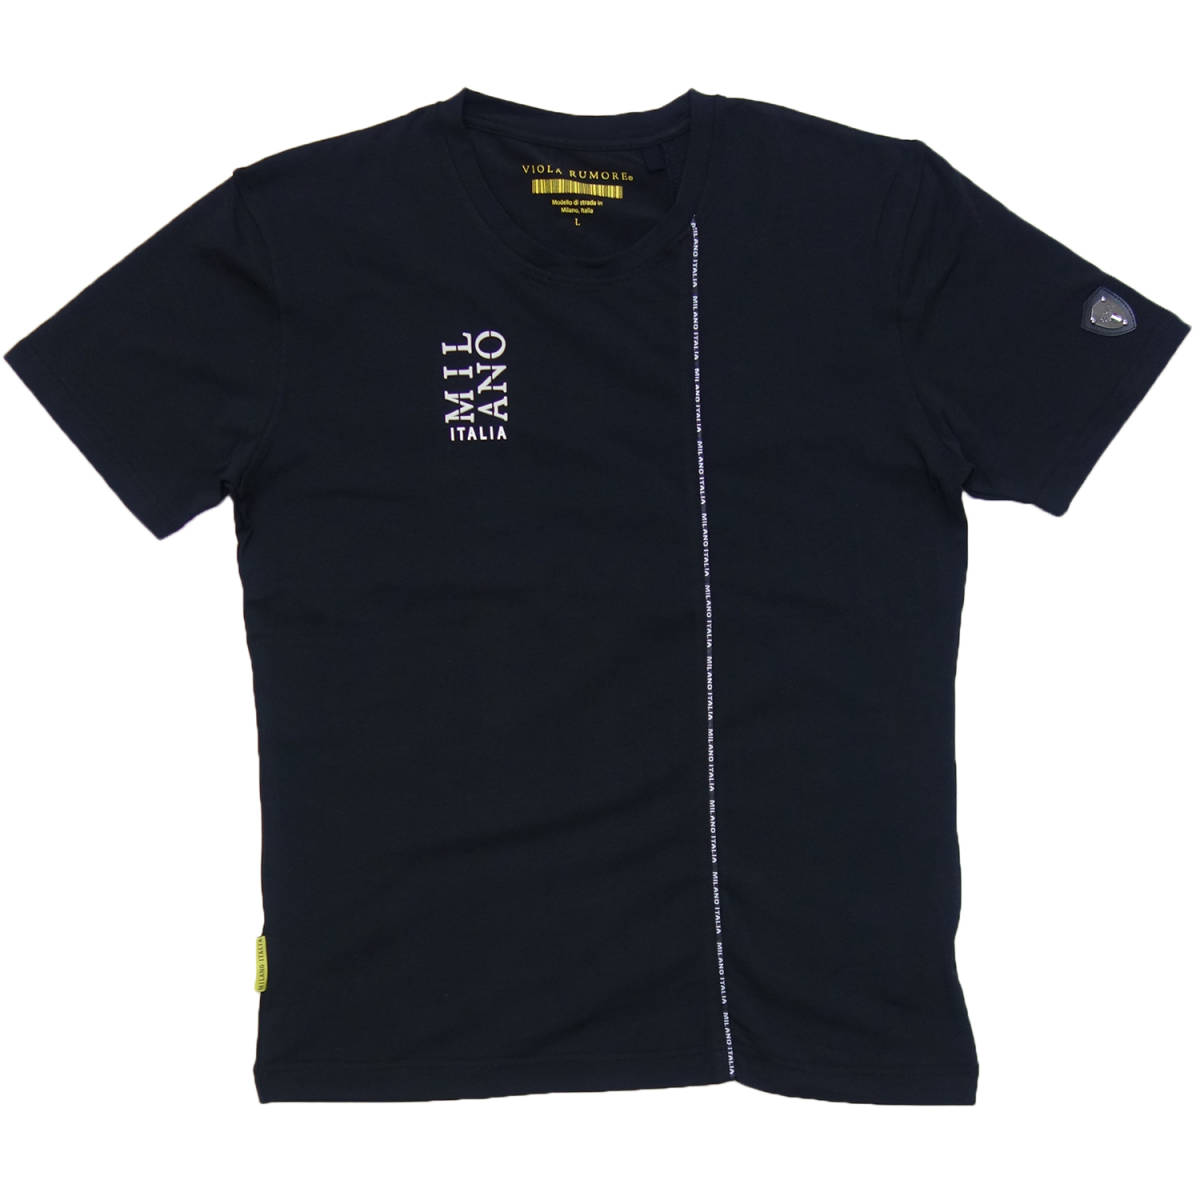 激安本物 ミラノ ビオラ メタリック ストレッチ パイピング LL(XL) 黒 Y31324 Tシャツ 半袖 VIOLA 送料無料 切替 ラジュグアリー ちょい悪 ヴィオラ 文字、ロゴ